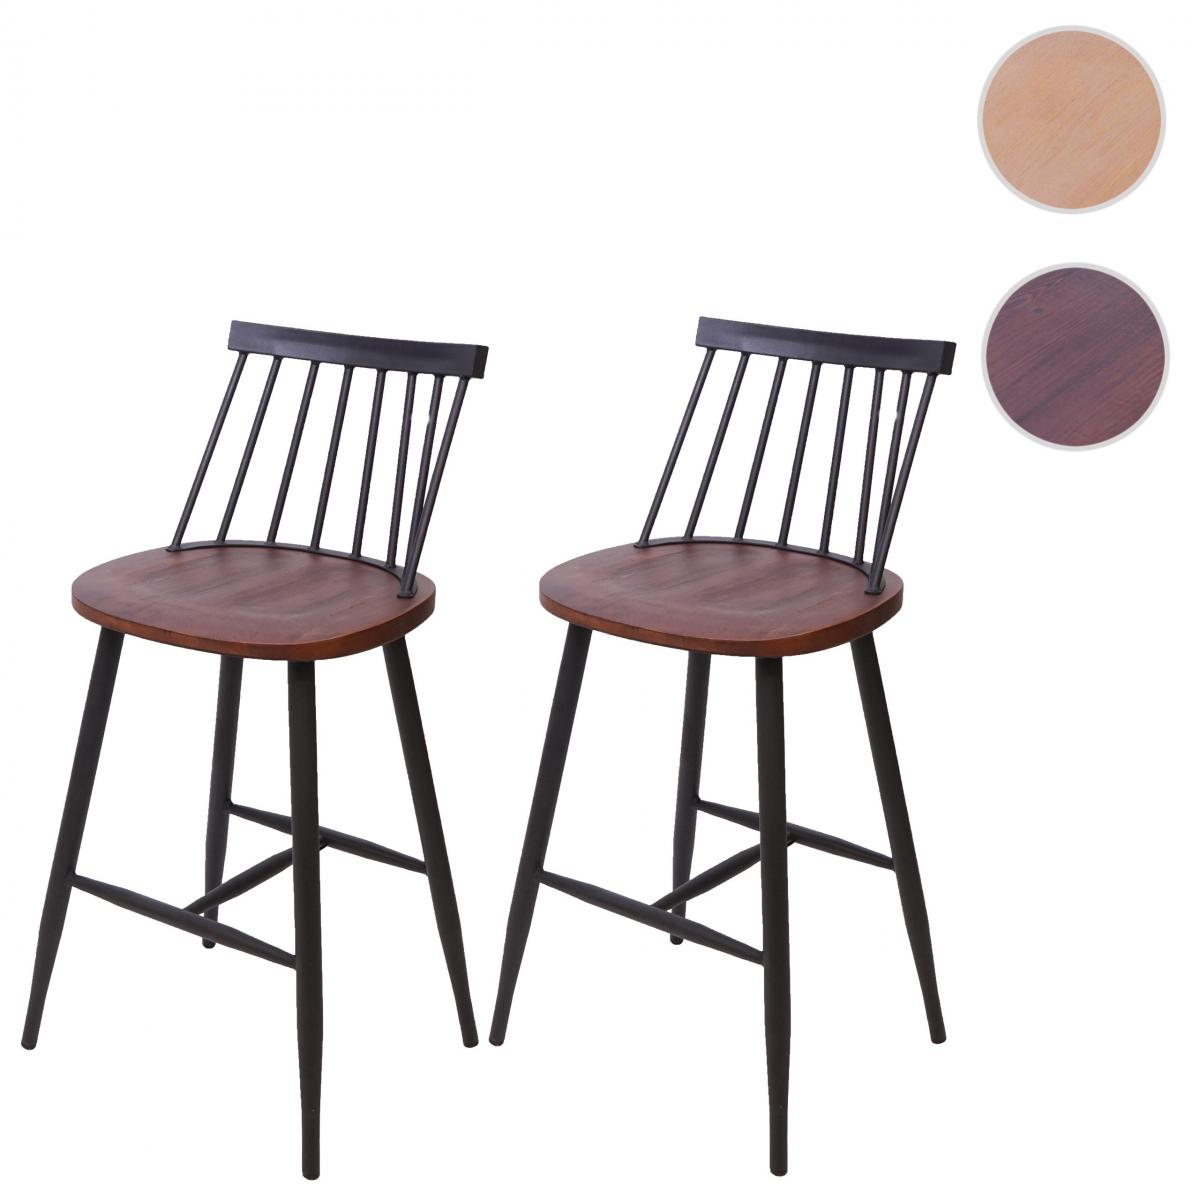 Mendler - 2x tabouret de bar HWC-G69, chaise, bois massif, rétro, métal, avec repose-pied, gastronomie ~ vintage marron - Tabourets